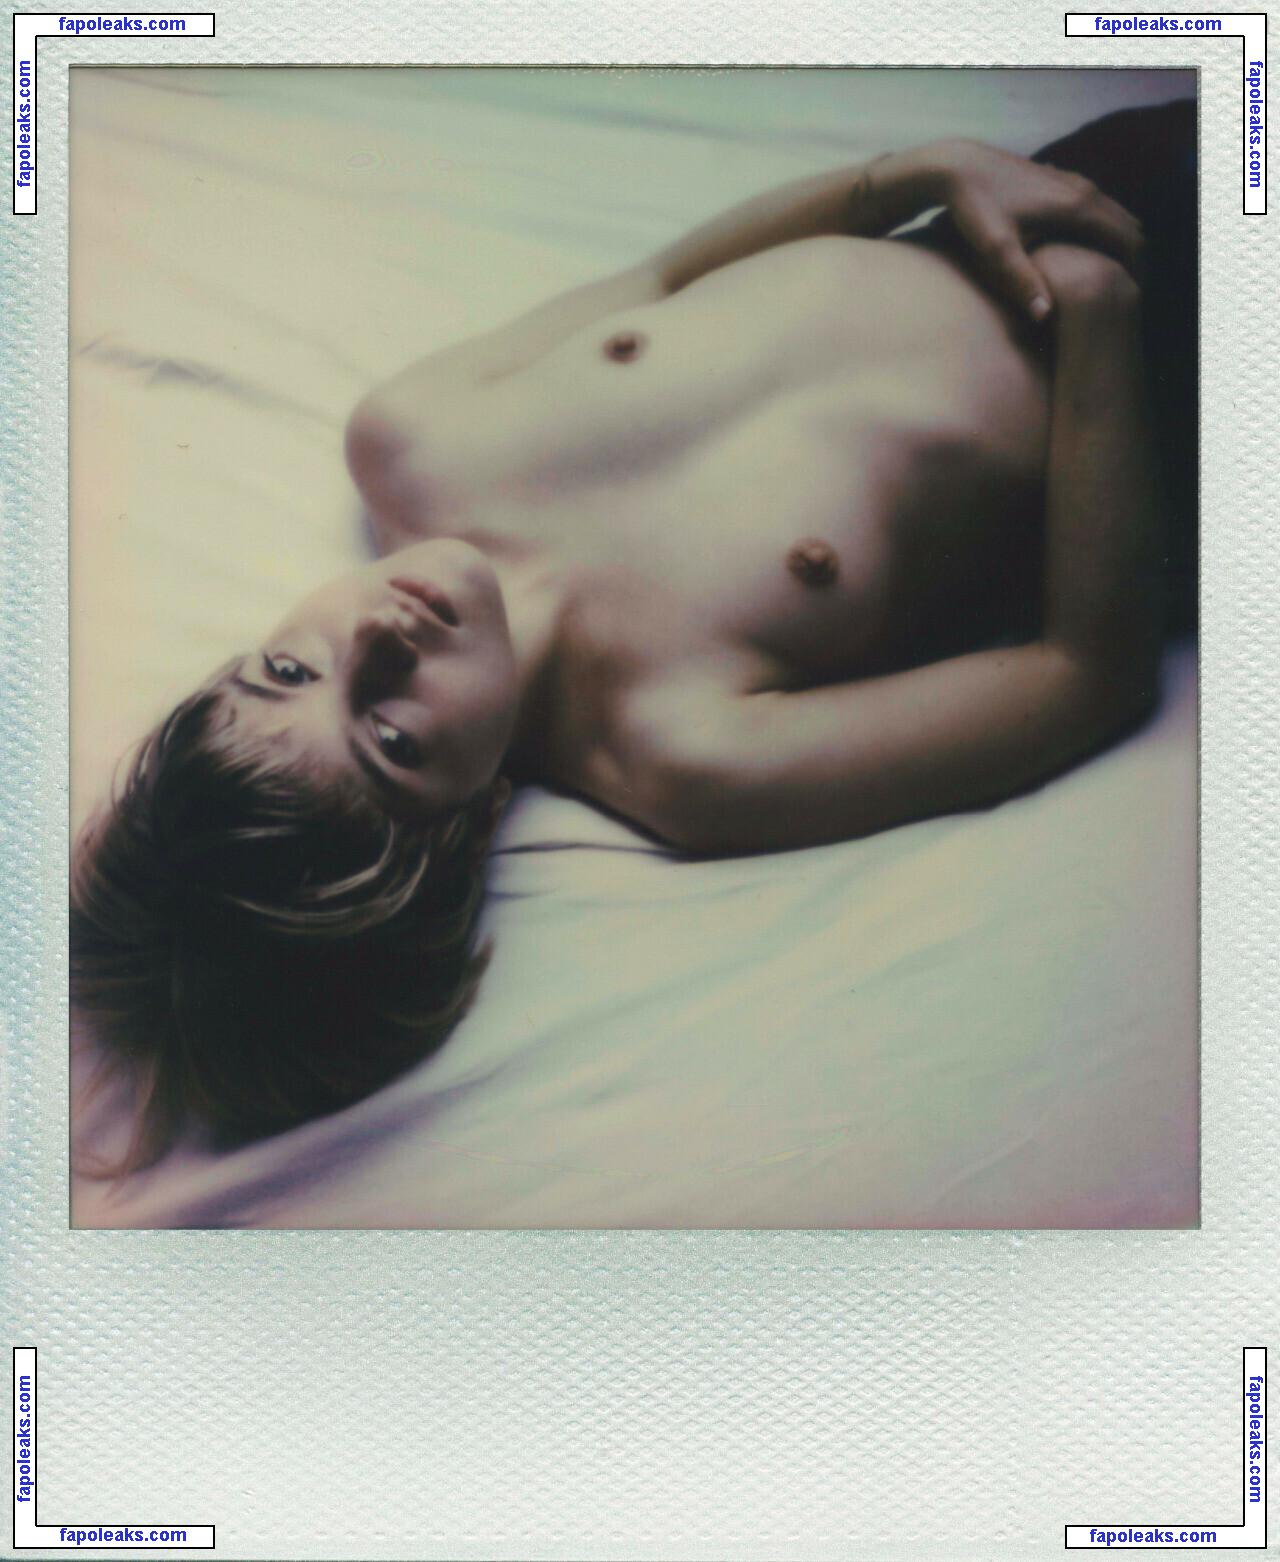 Vincent Littlehat / vincentlittlehat nude photo #0146 from OnlyFans